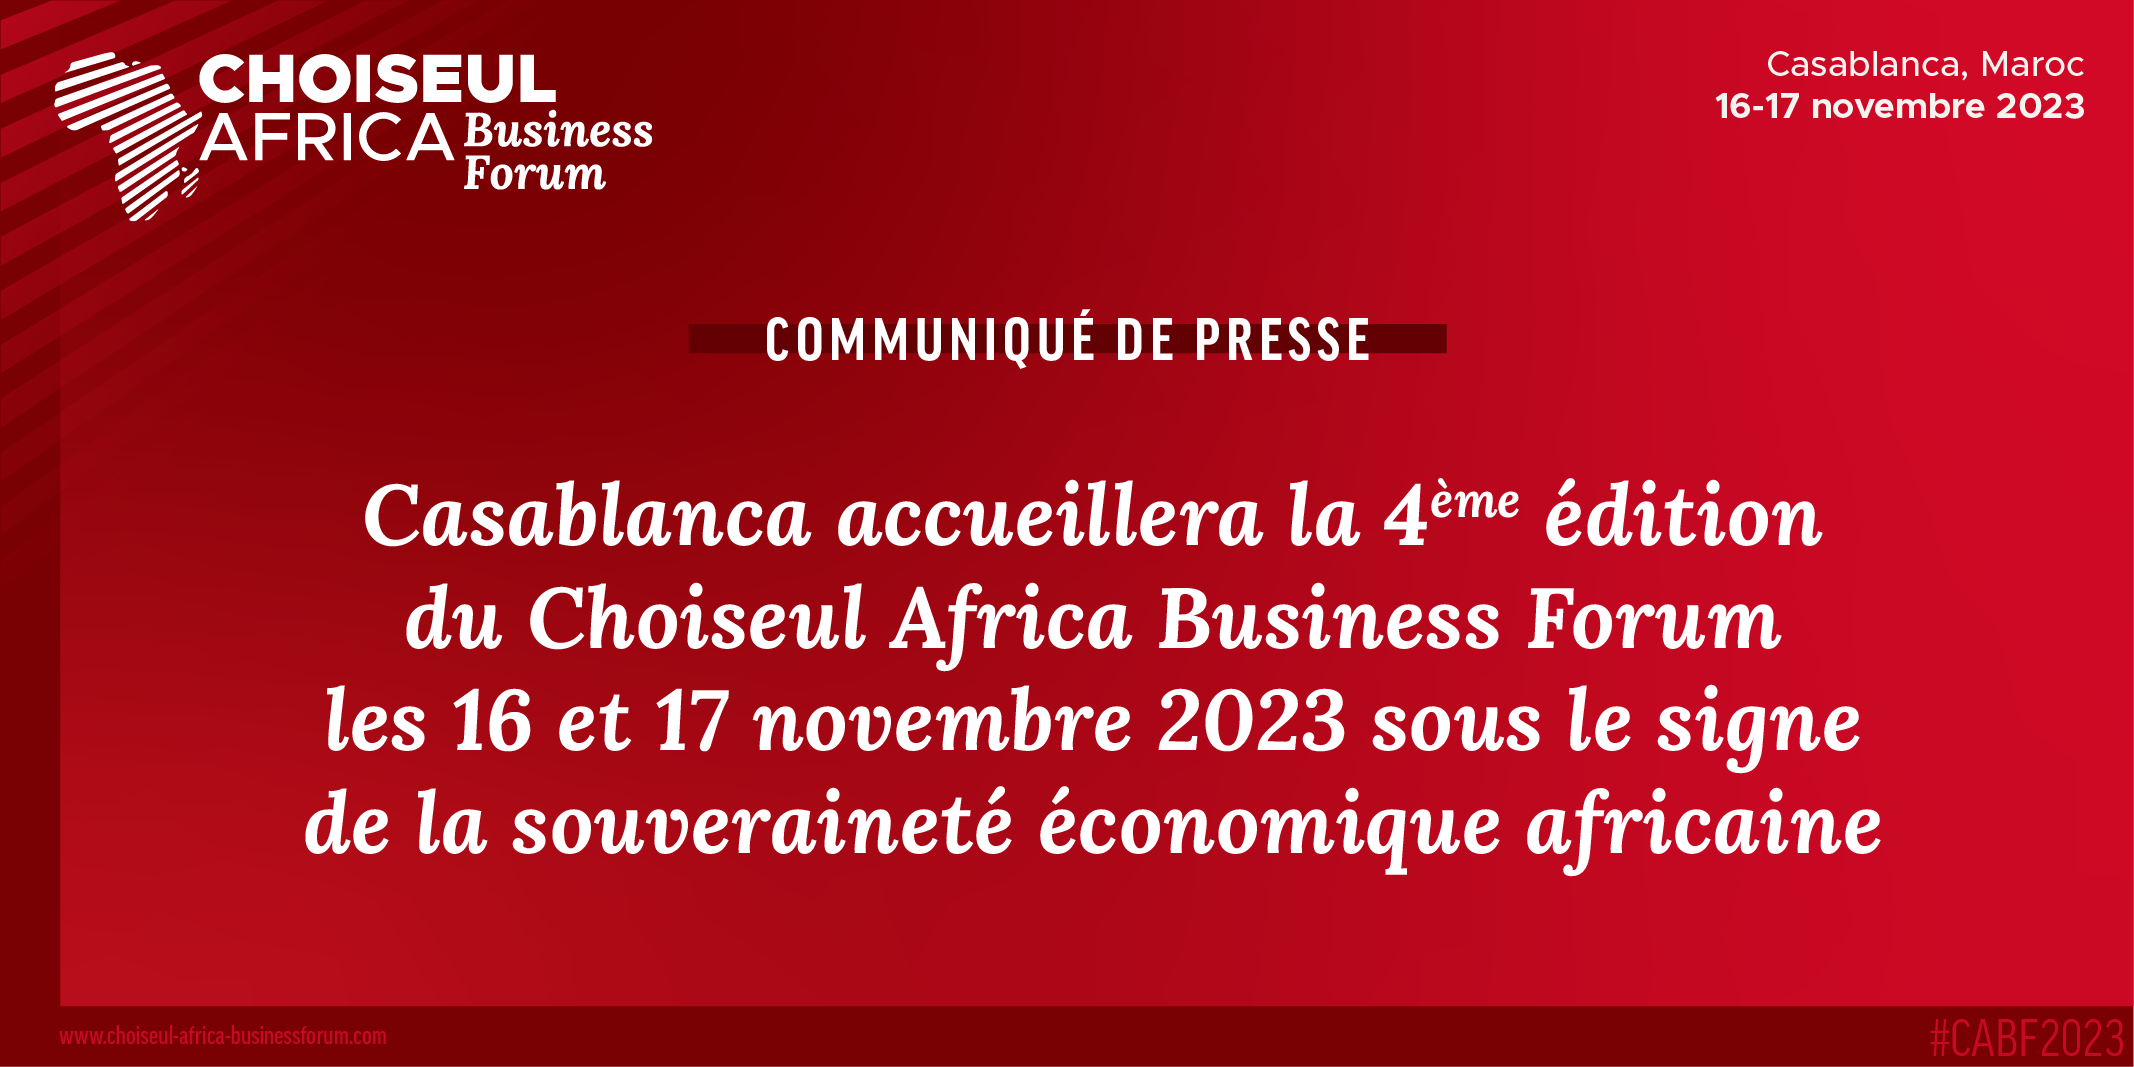 Casablanca accueillera la 4ème édition du Choiseul Africa Business Forum les 16 et 17 novembre 2023 sous le signe de la souveraineté économique africaine